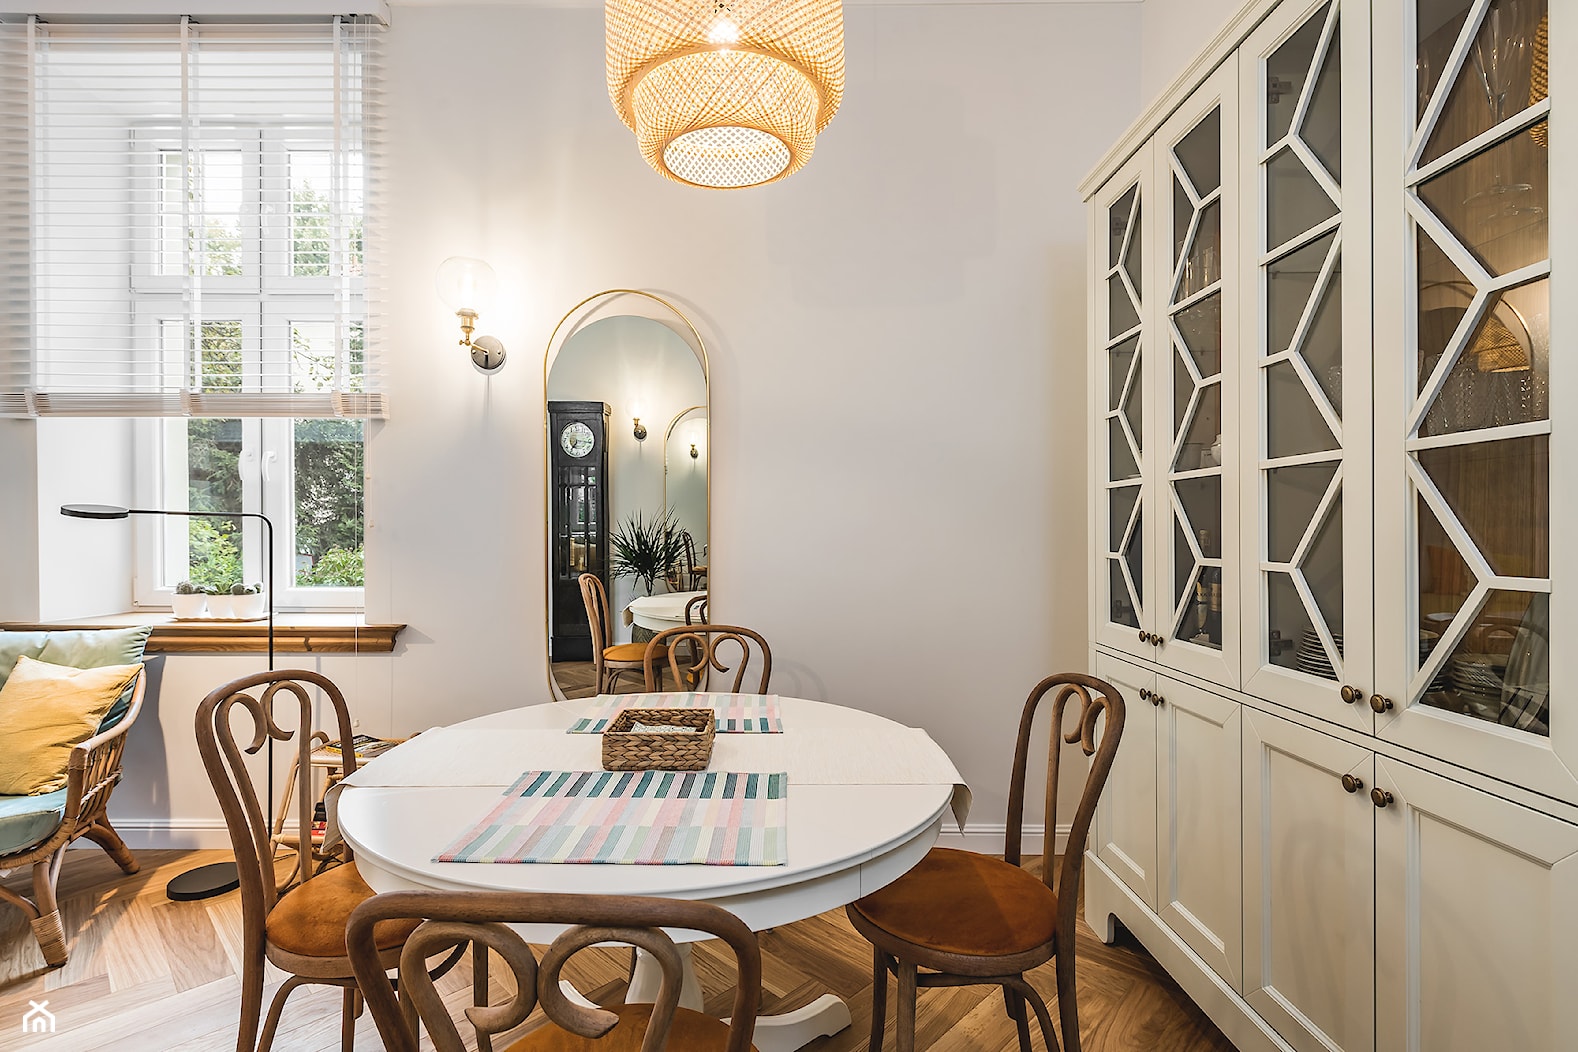 Eklektyczny Apartament w Sopocie - Mała biała jadalnia w salonie, styl vintage - zdjęcie od Pracownia Projektowa Decoretti - Agata Jachimowicz - Homebook